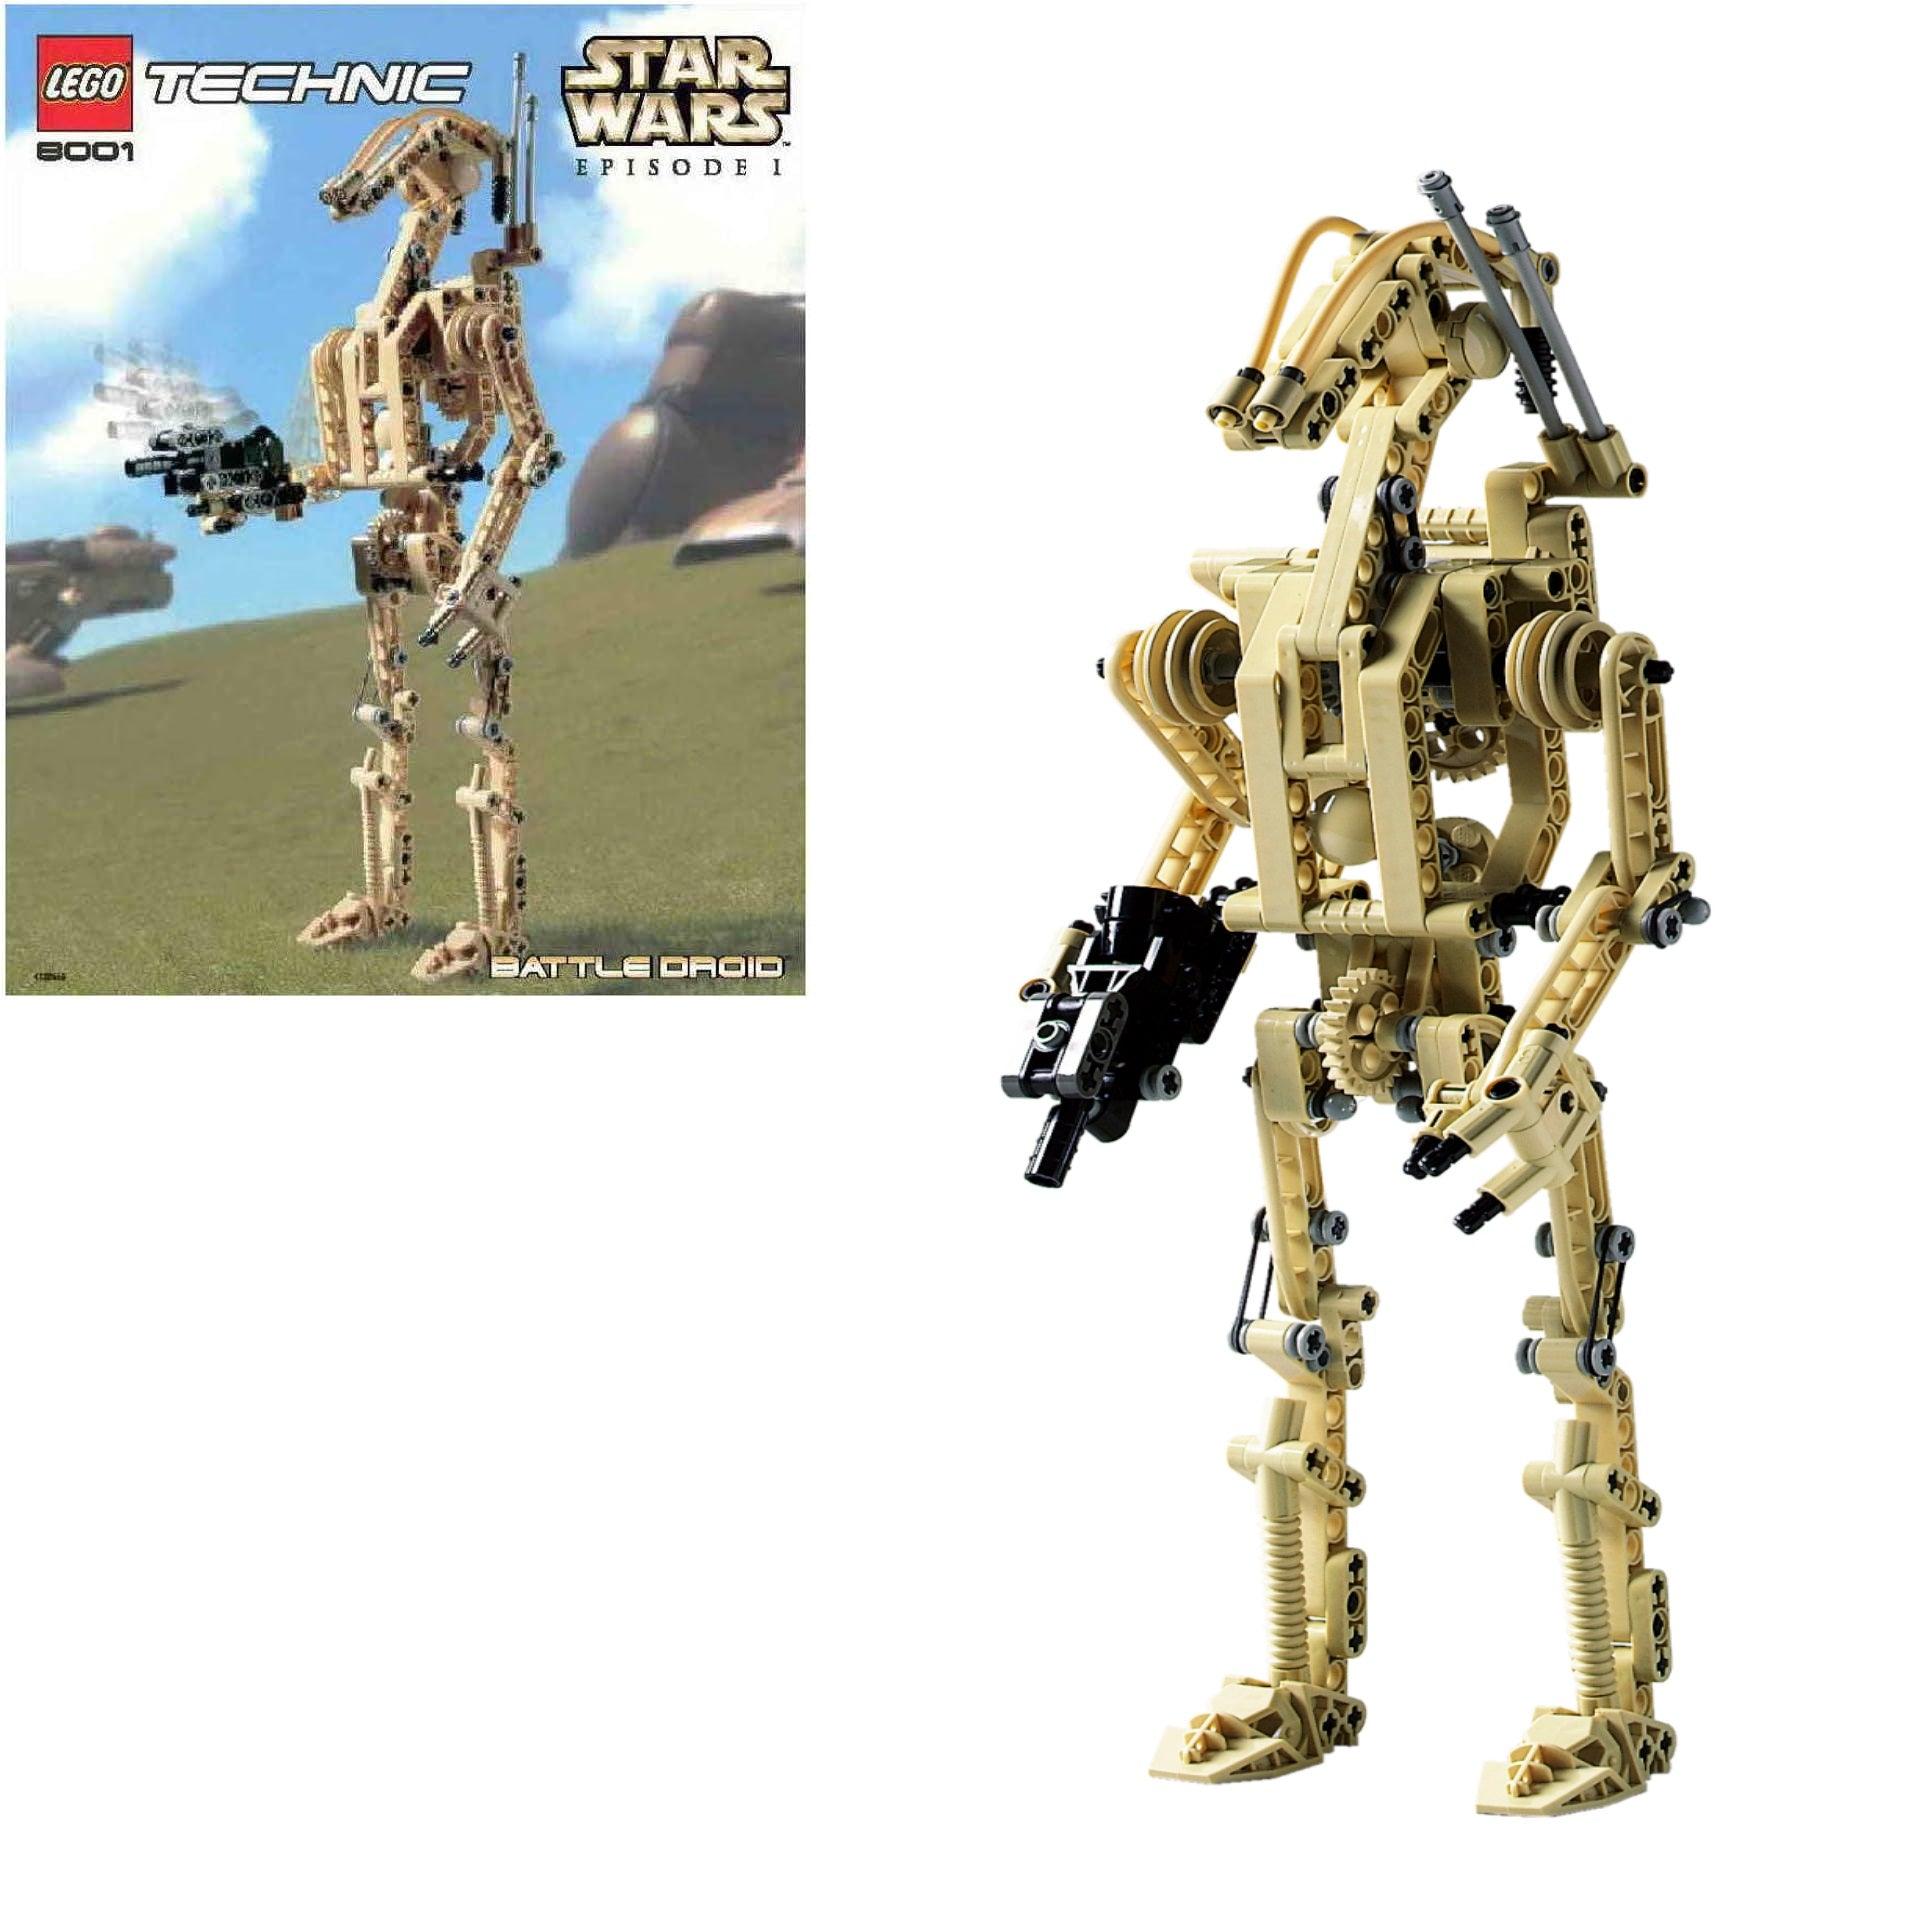 LEGO Battle Droid 8001 Star Wars - Technic LEGO STARWARS @ 2TTOYS LEGO €. 26.49